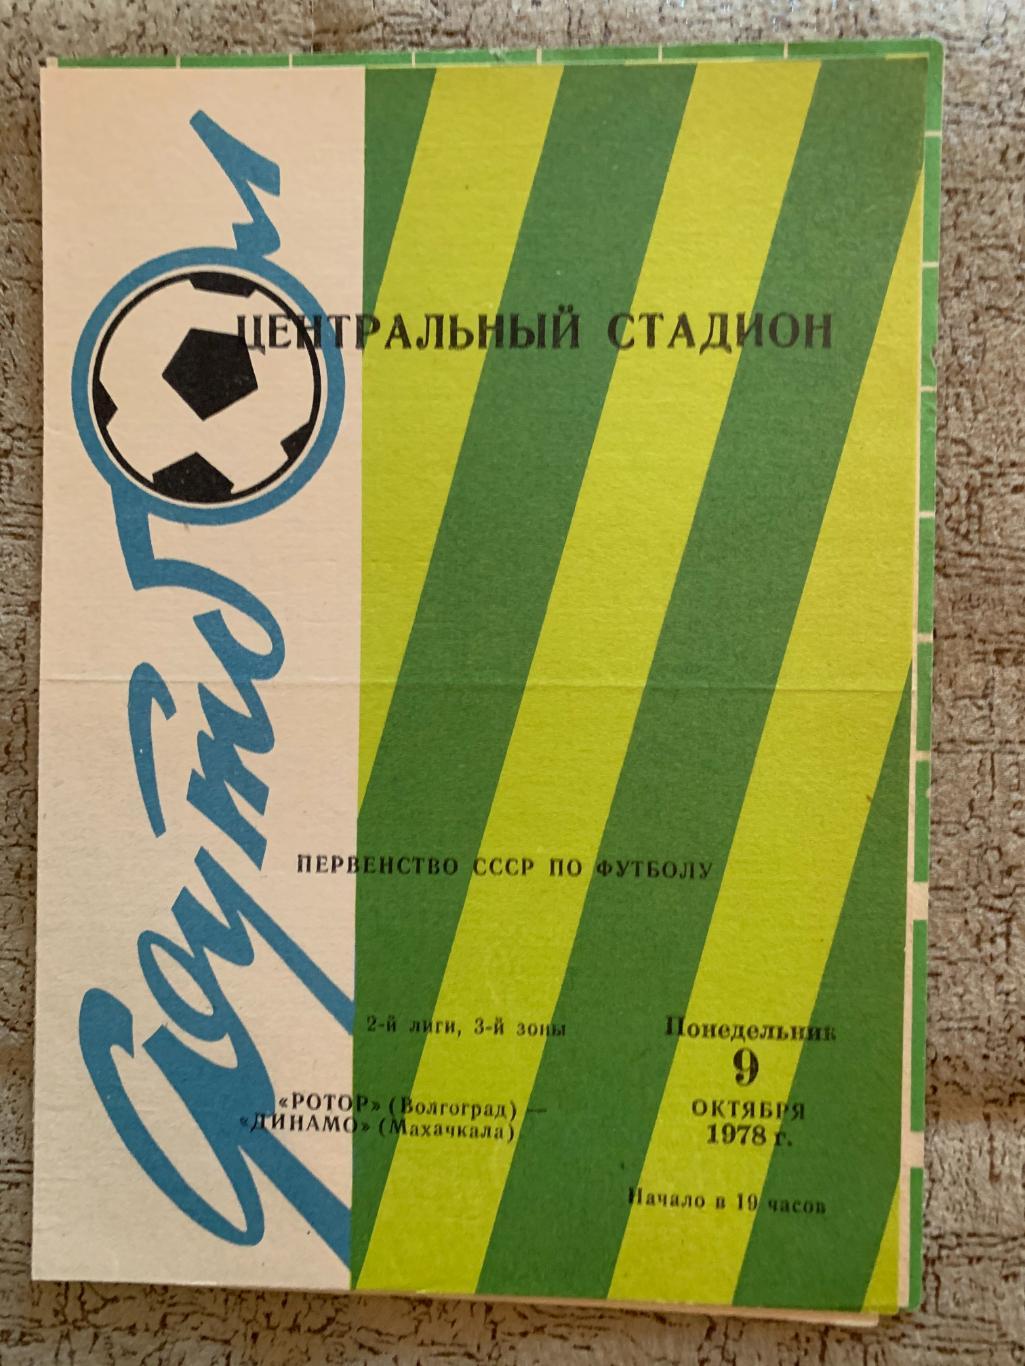 Ротор Волгоград - Динамо Махачкала 09.10.1978